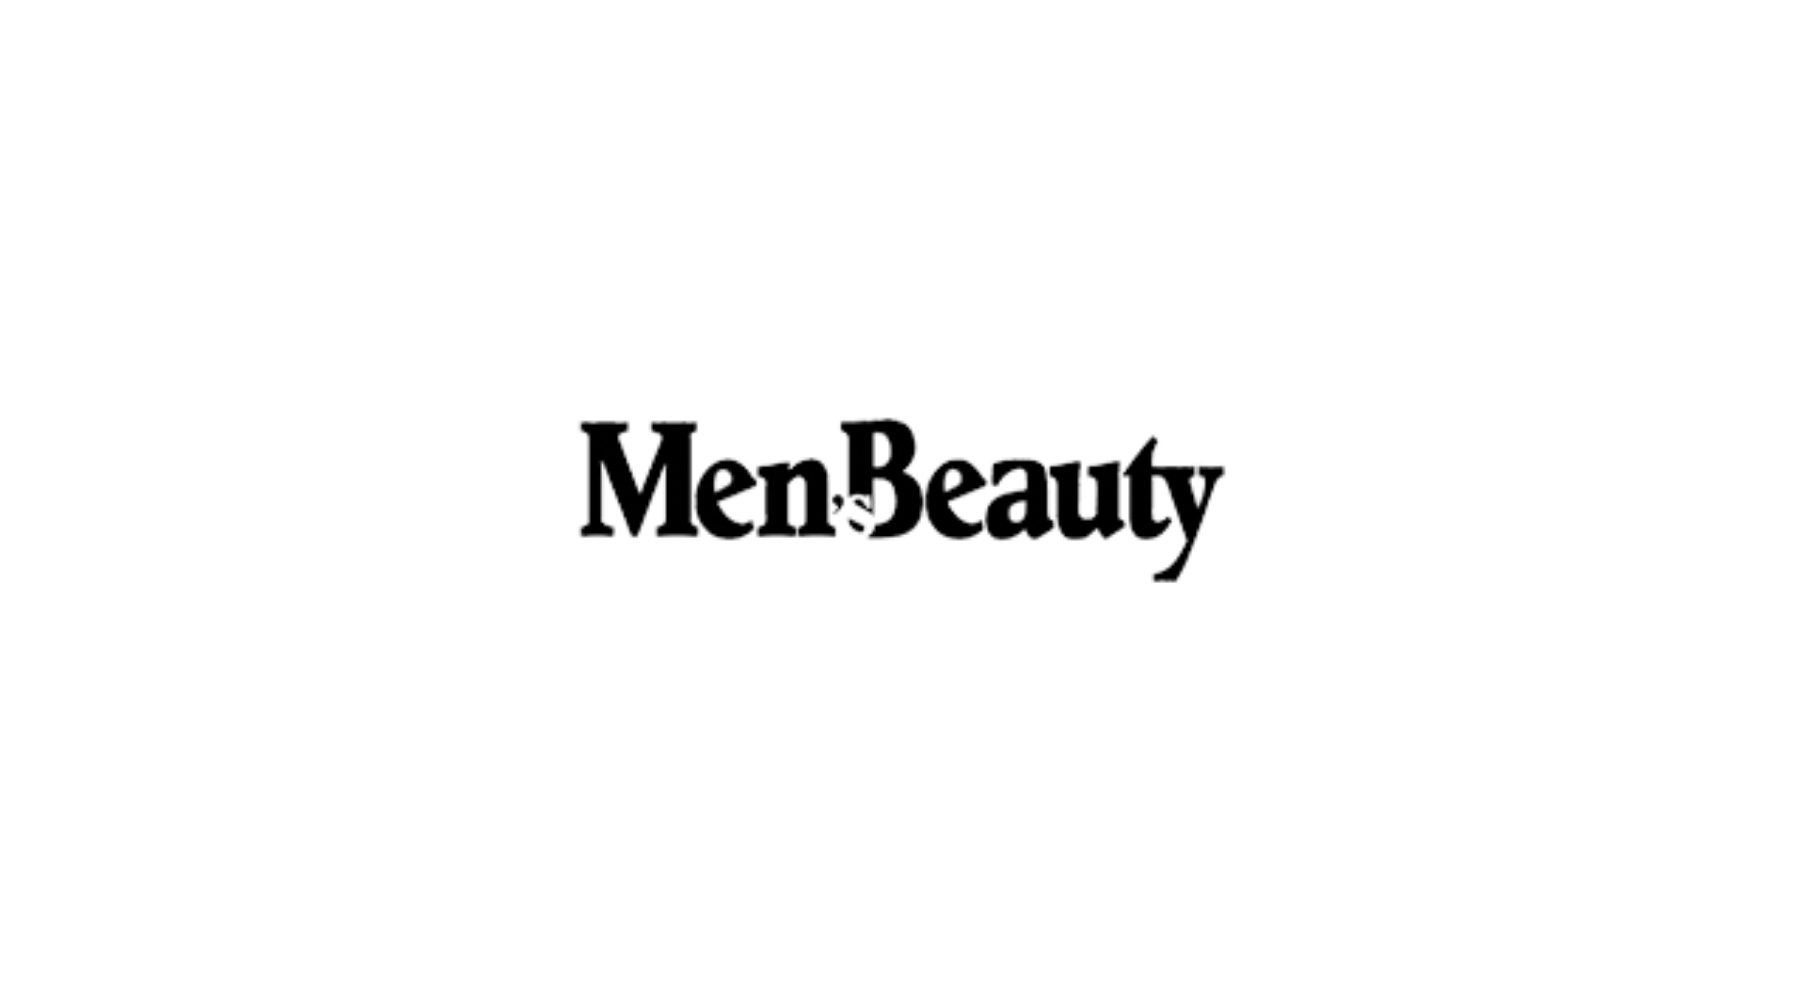 Men's Beauty